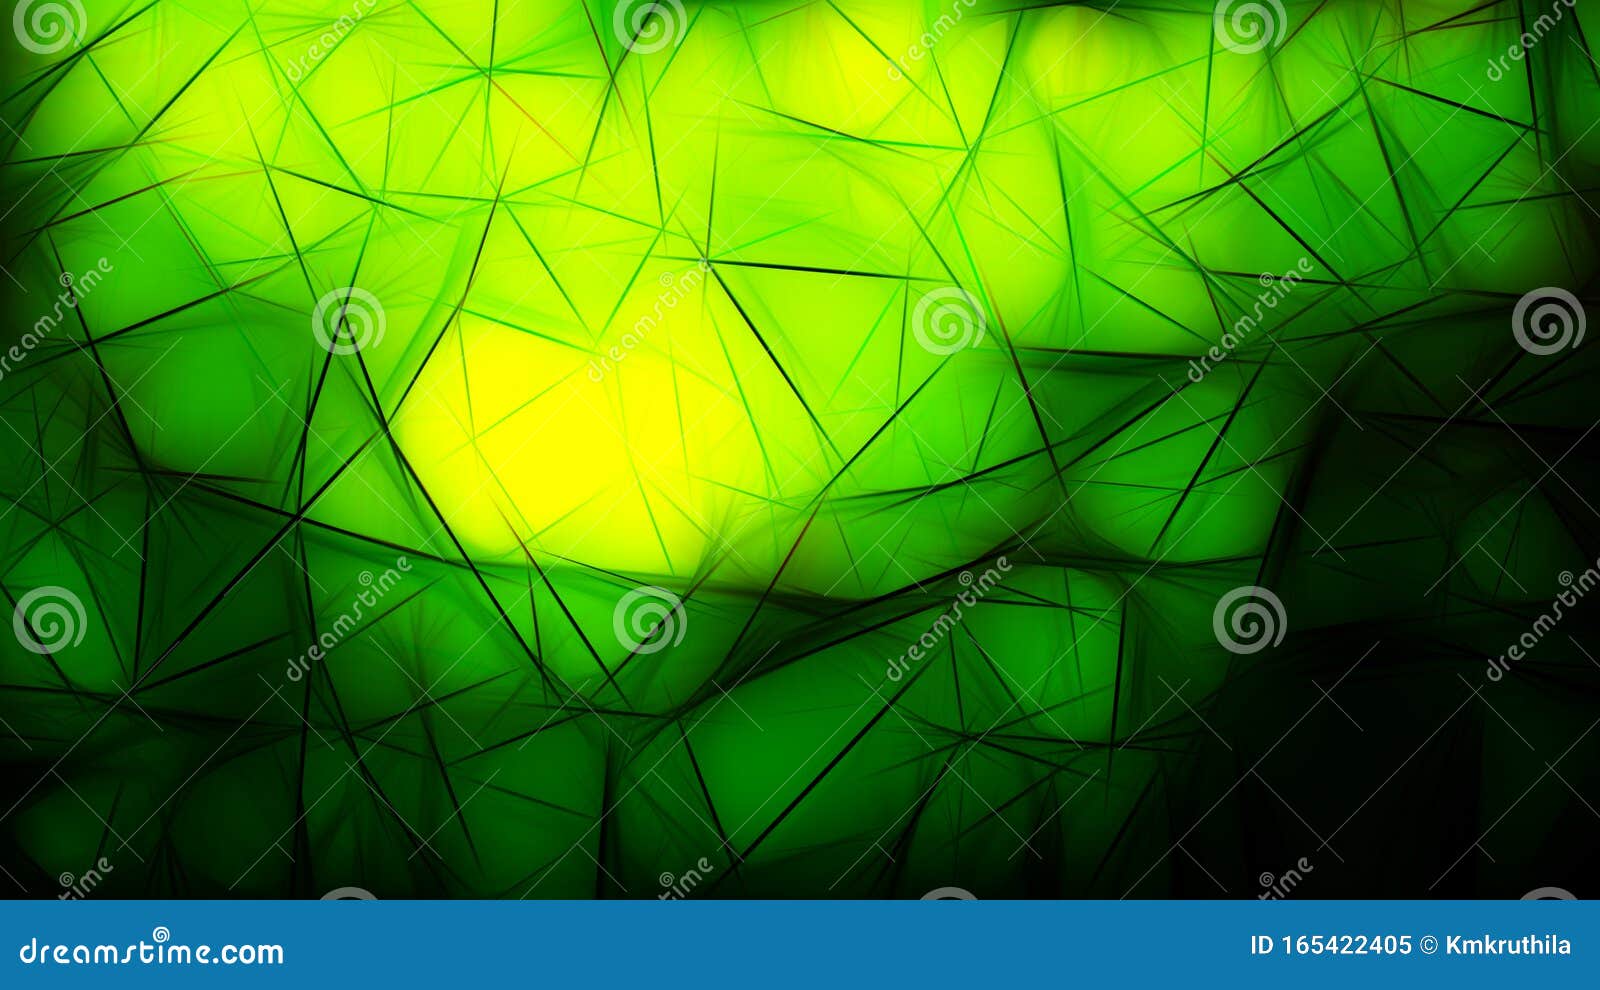 Imagen De Fondo De Pantalla De Color Negro Verde Y Amarillo Stock de  ilustración - Ilustración de fondo, textura: 165422405